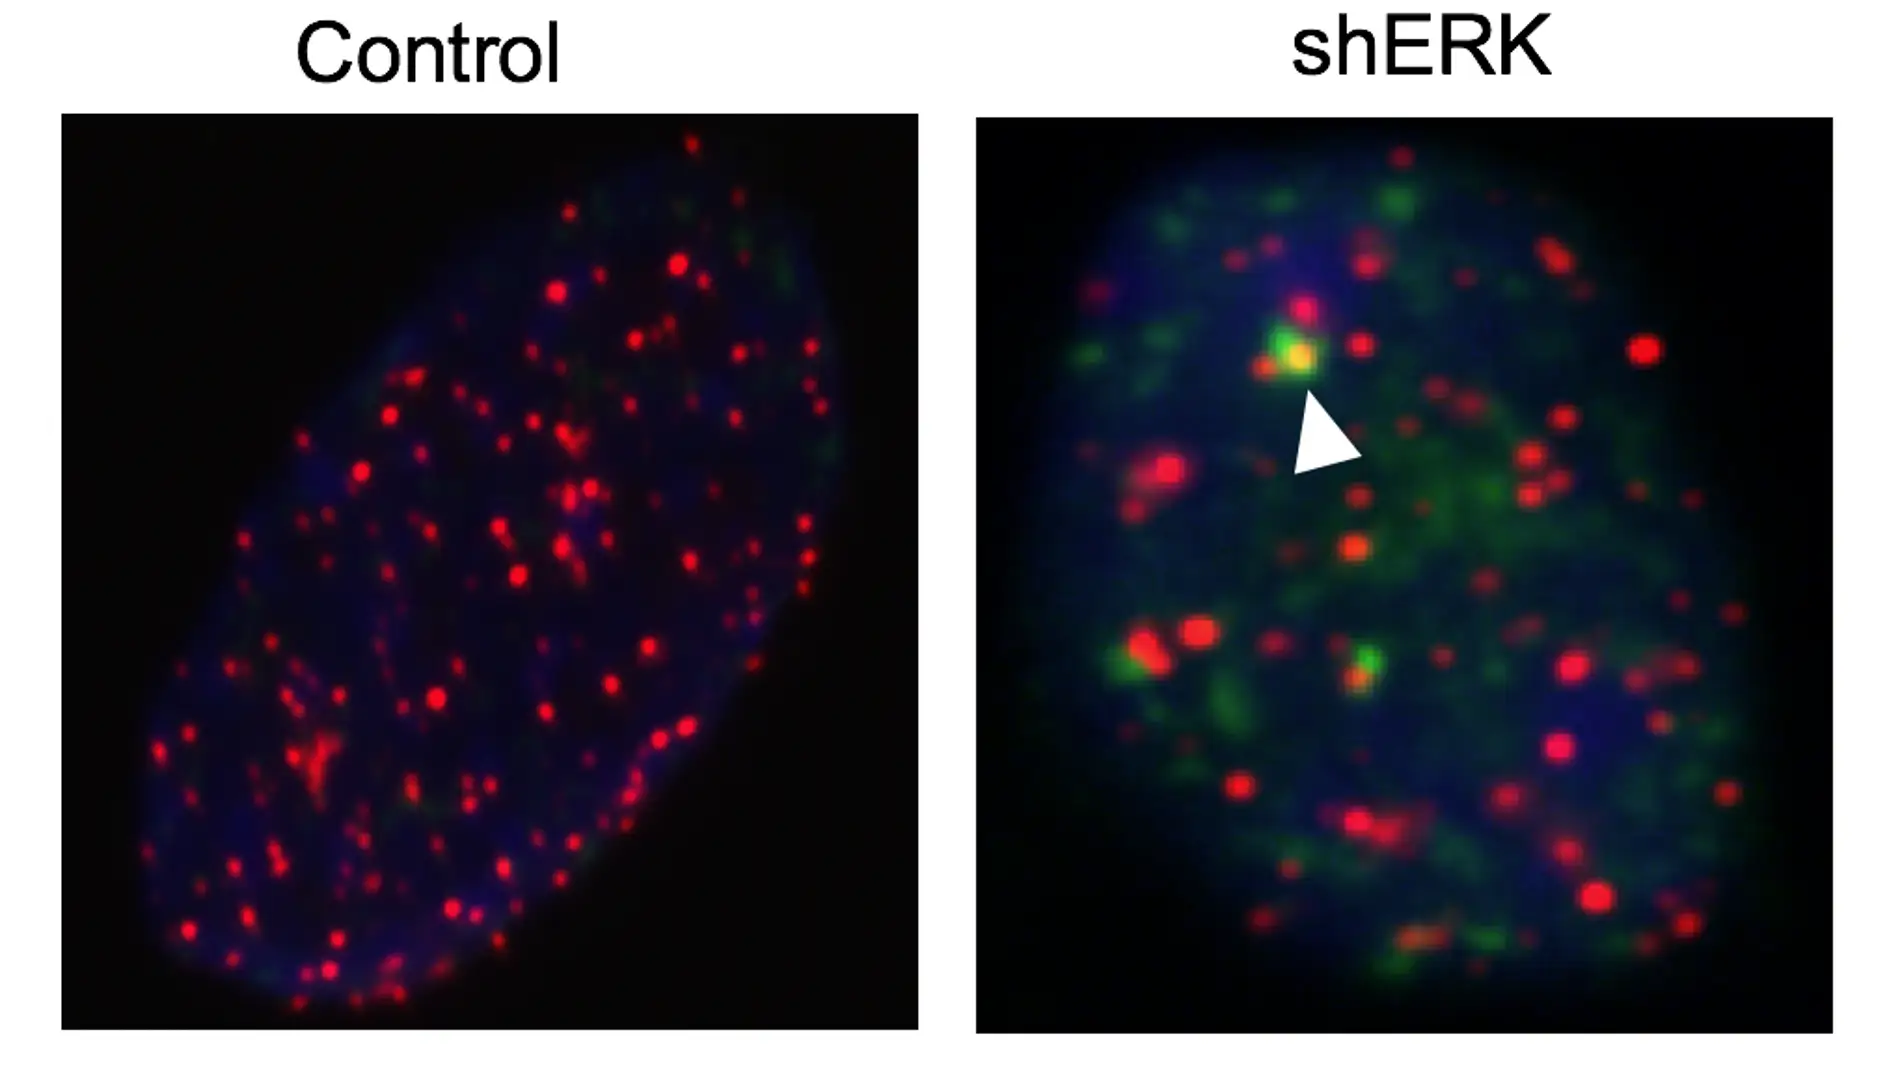 telómeros en fibroblastos embrionarios de ratón